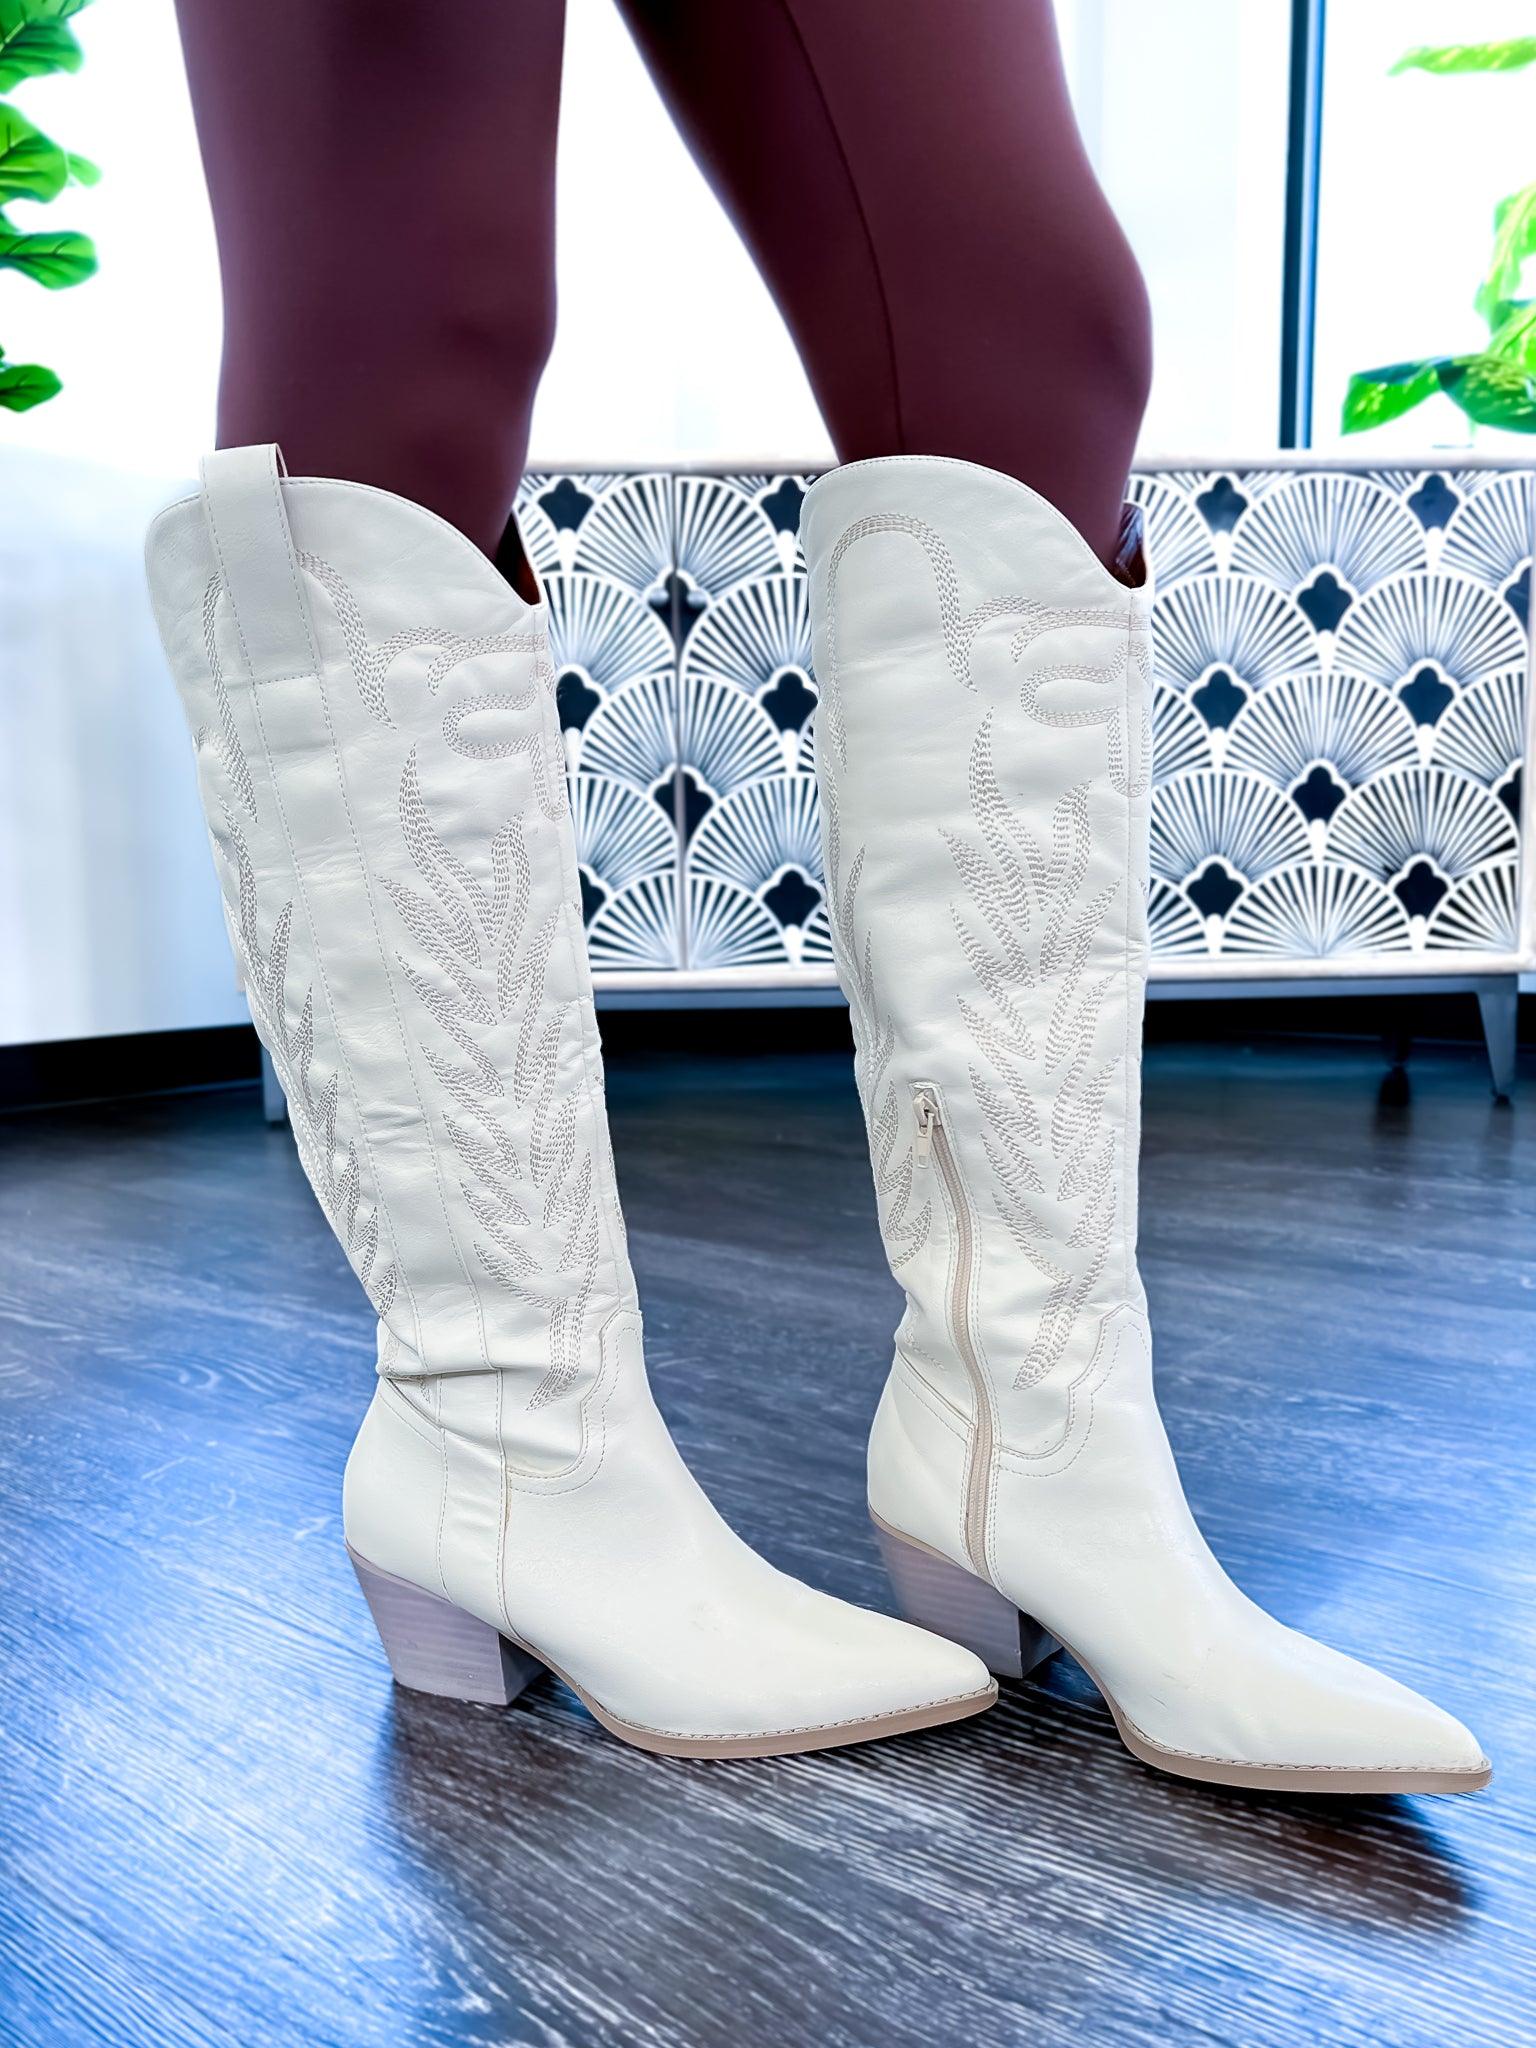 White Samara Boots - The ZigZag Stripe